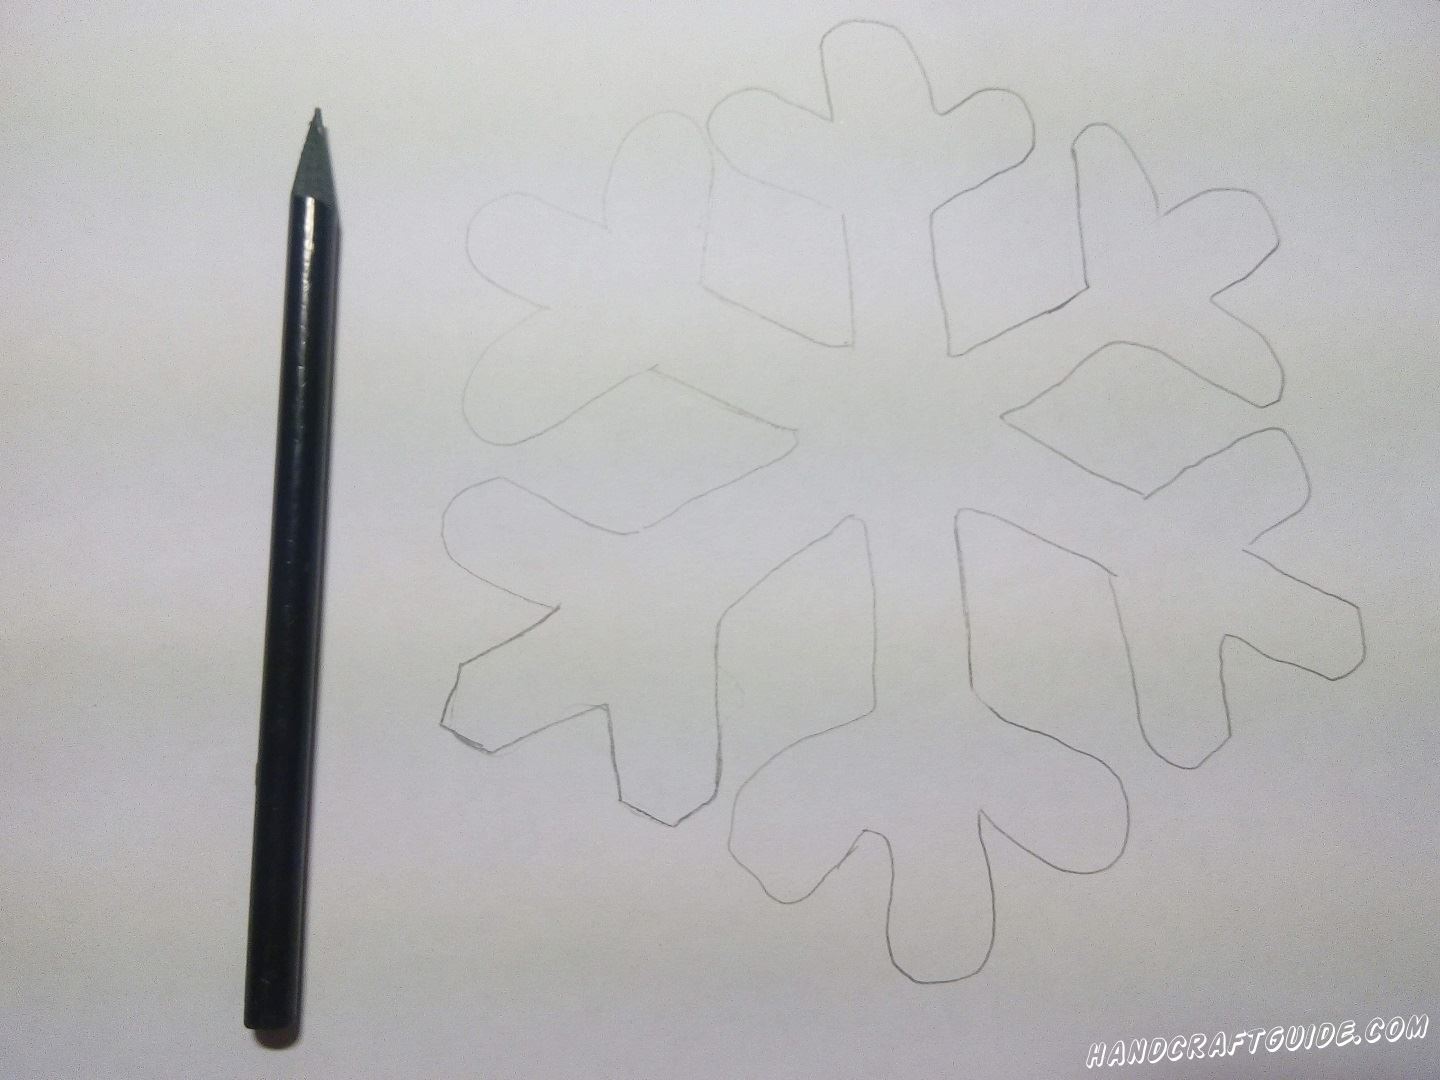 Берем карандаш, бумагу и рисуем красивую симметричную снежинку.